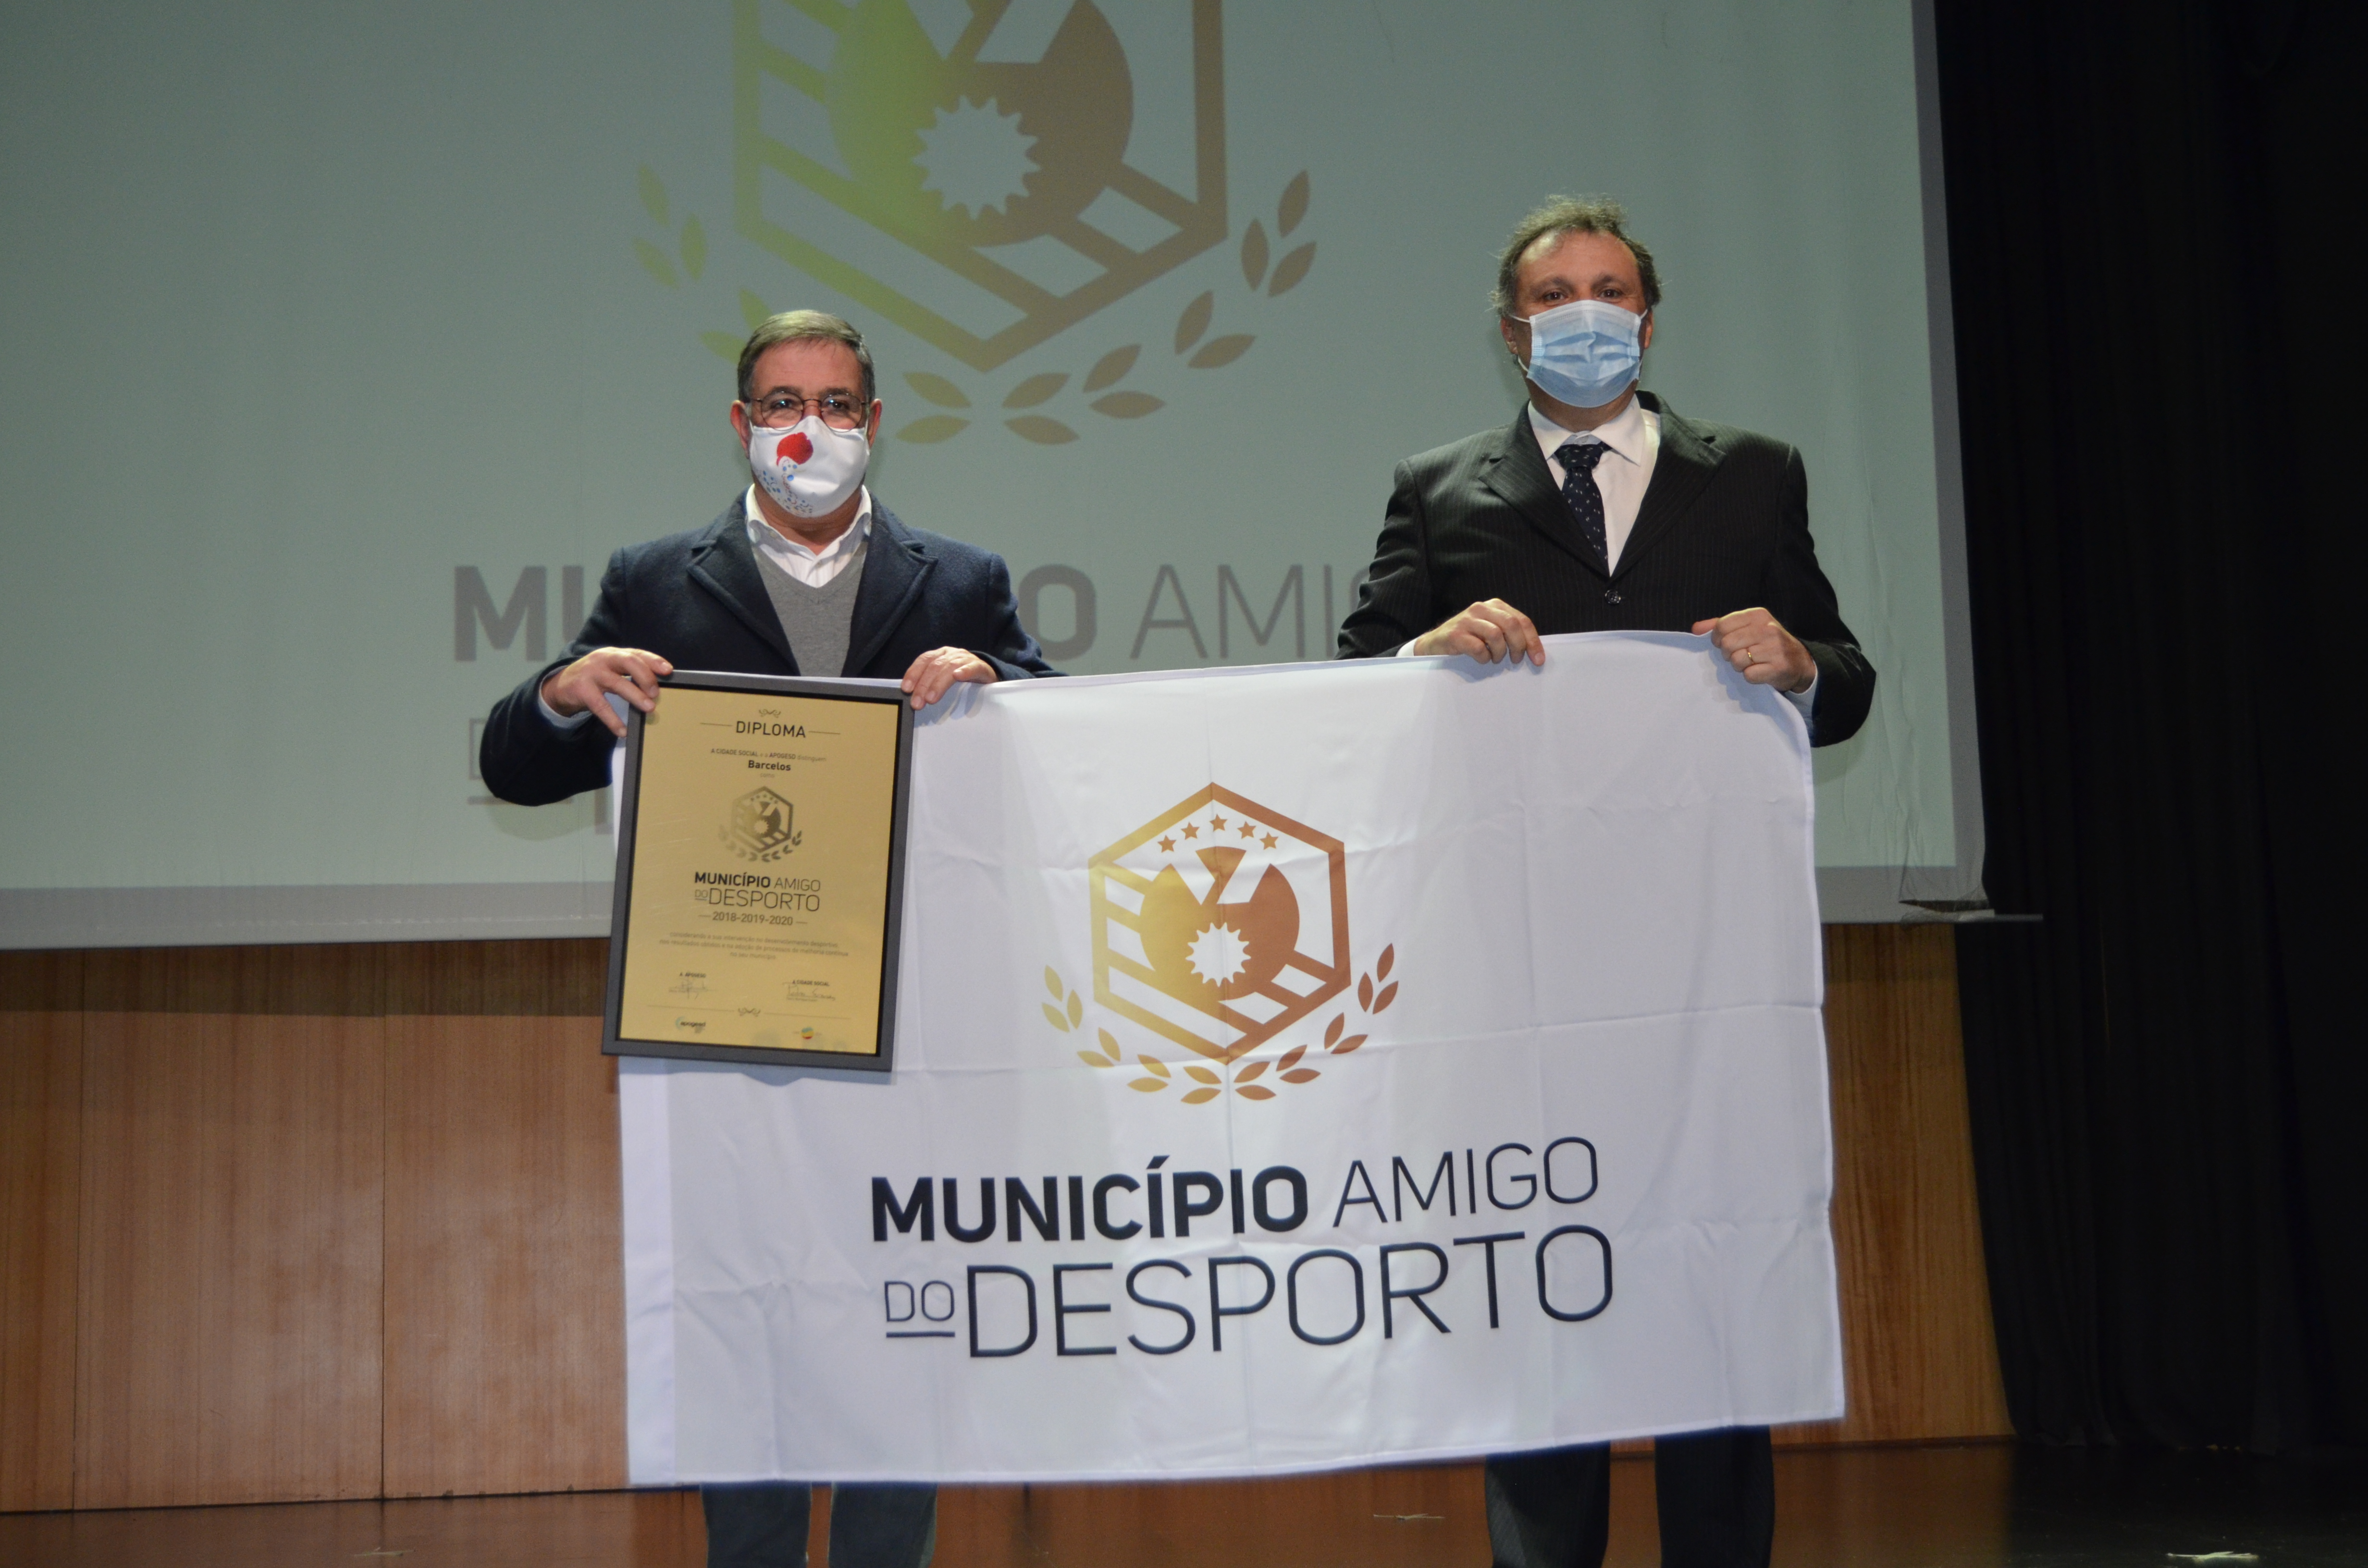 Barcelos recebe galardão “Município Amigo do Desporto”